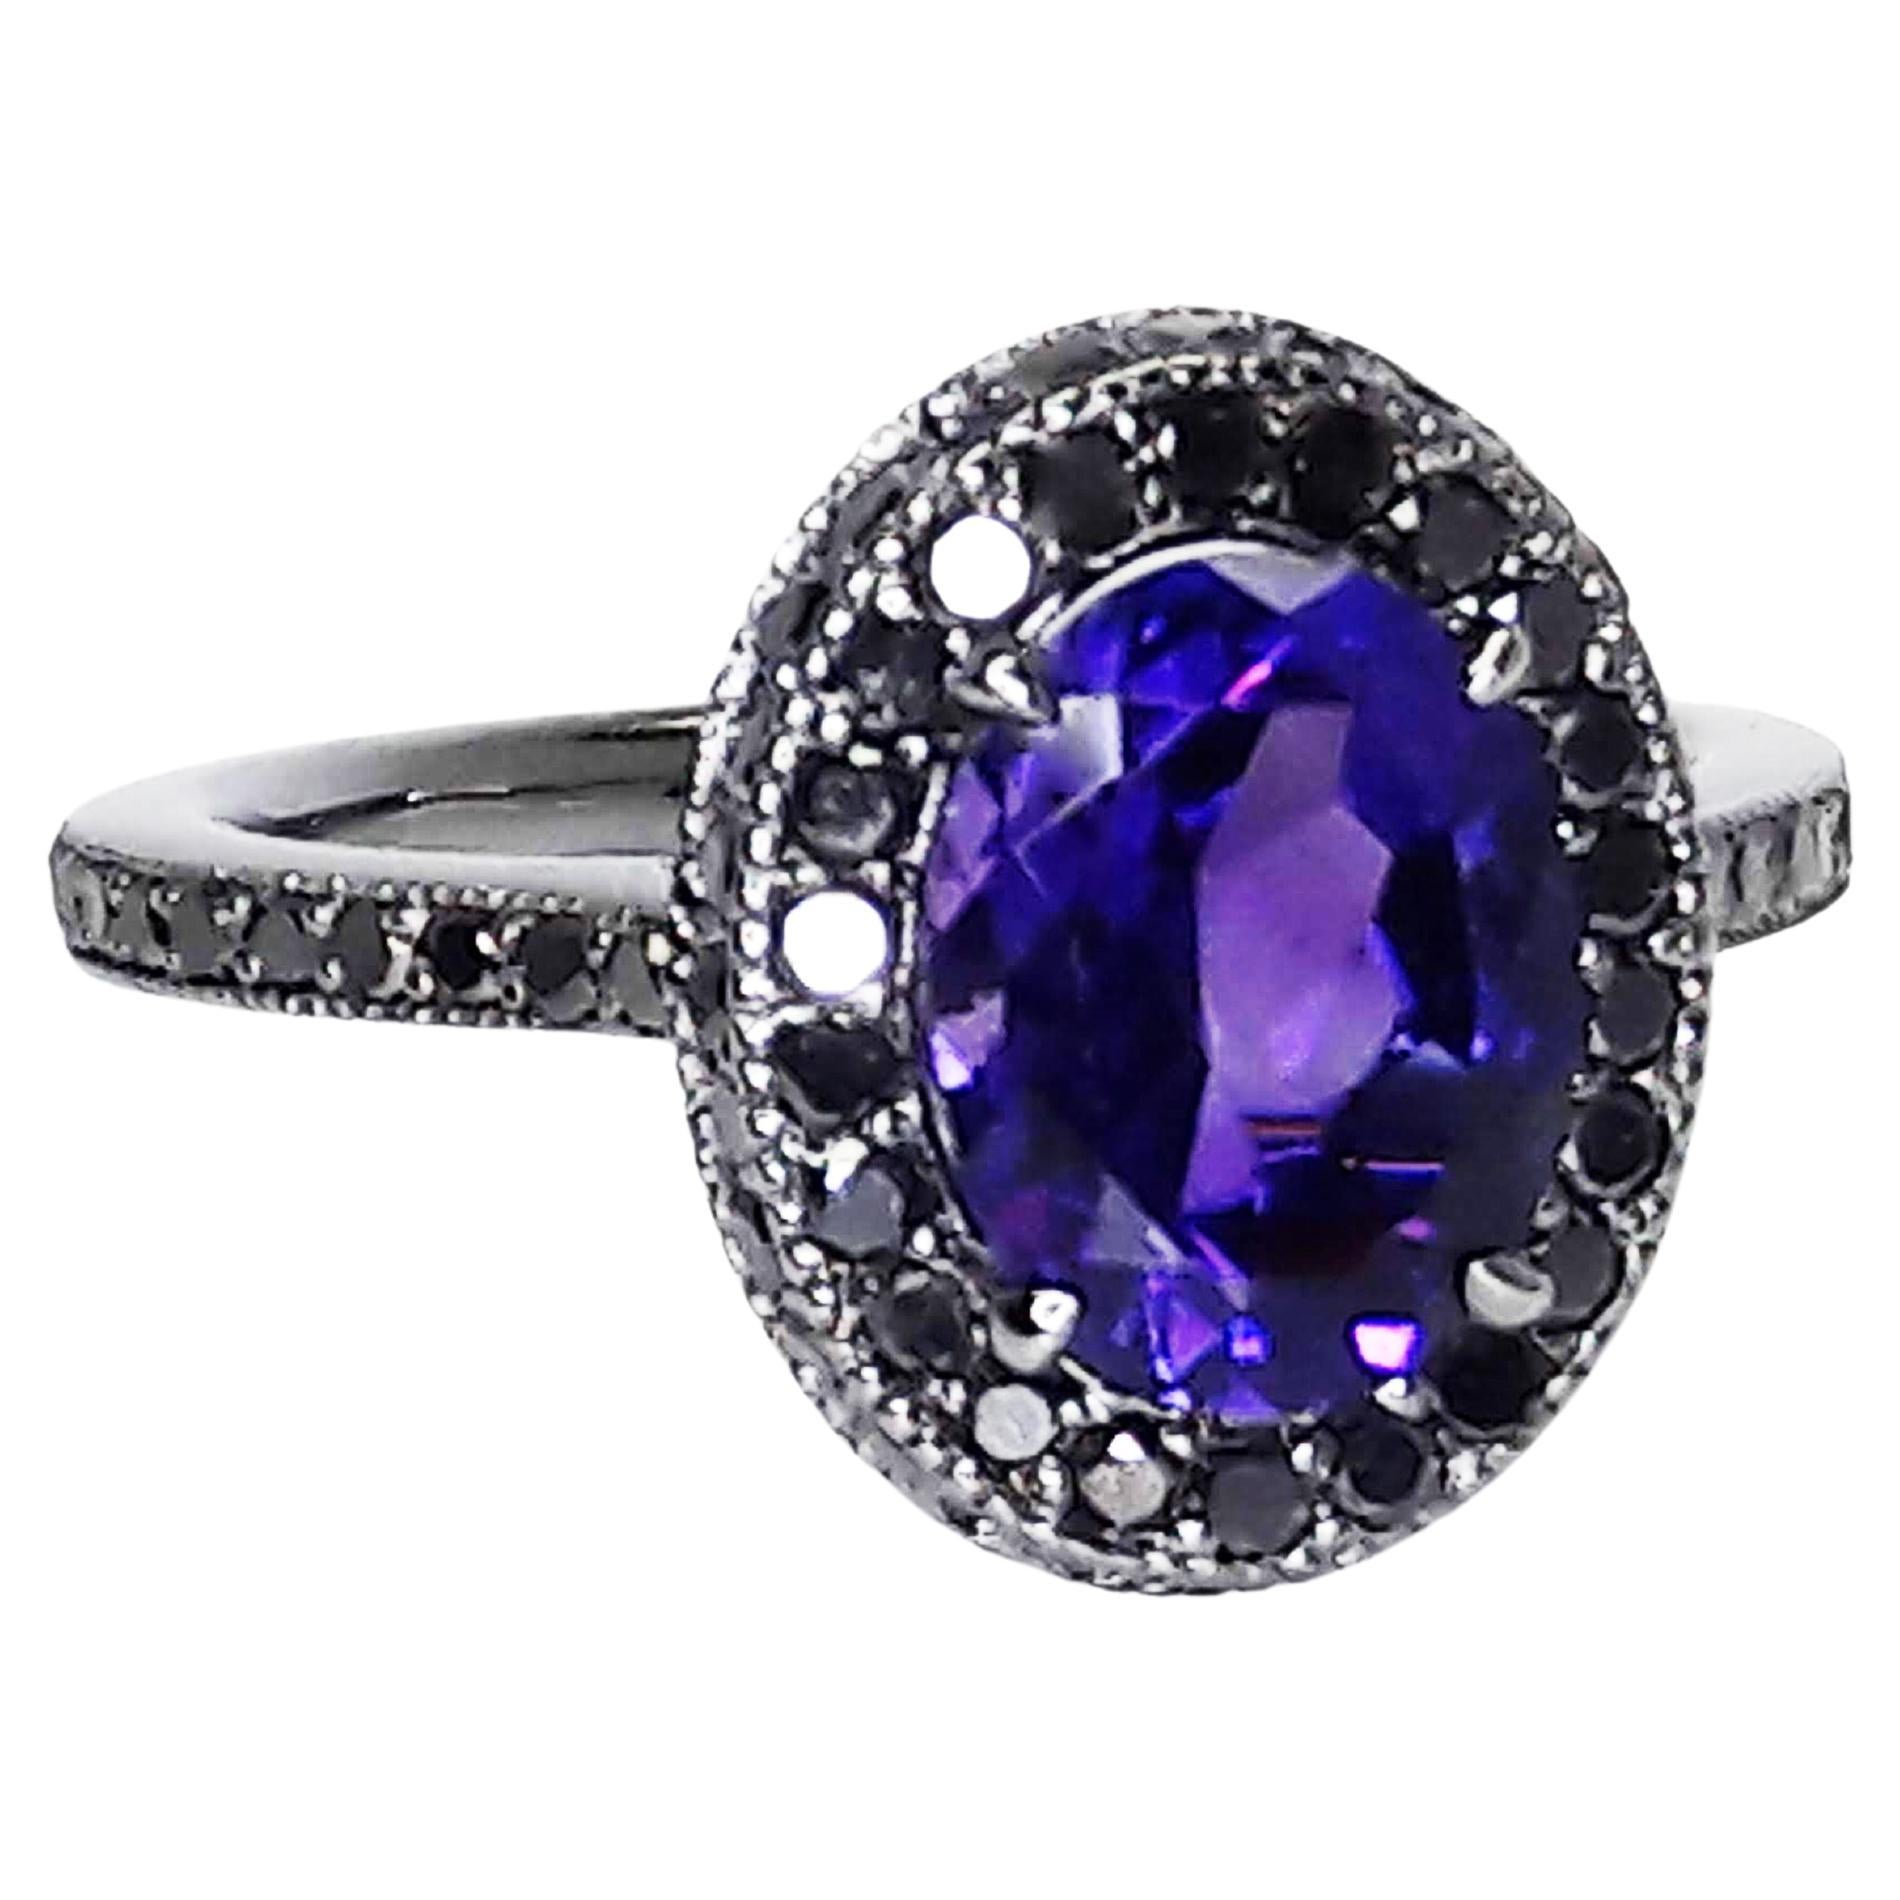 1.5 Carat Natural Purple Amethyst 0.52 Carat Black Diamonds 18 Karat Gold Ring